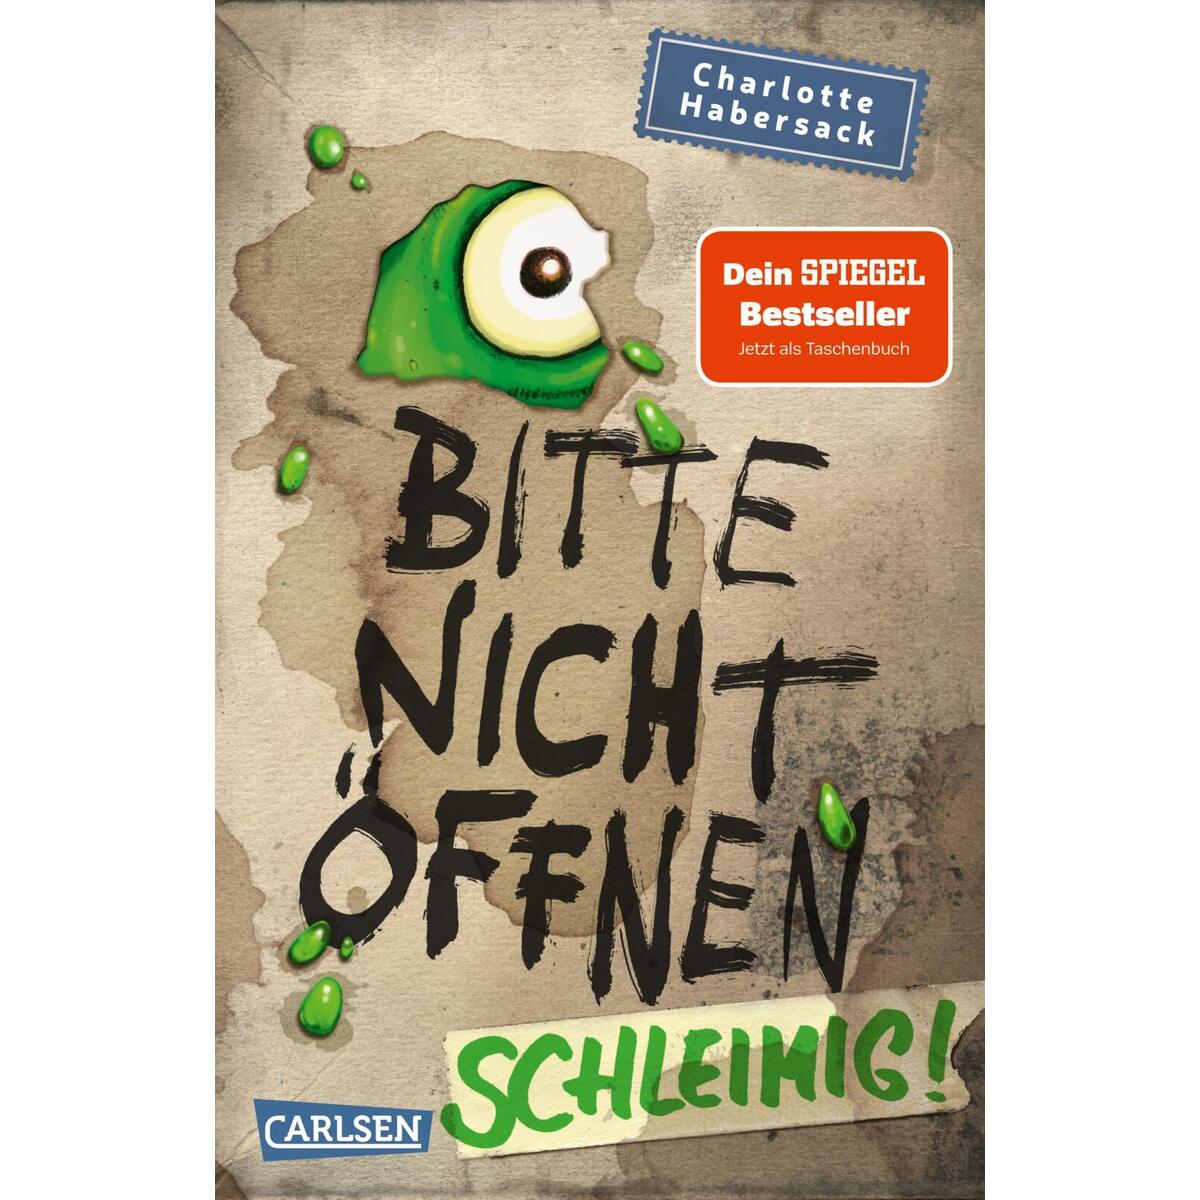 Bitte nicht öffnen 2: Schleimig! von Carlsen Verlag GmbH